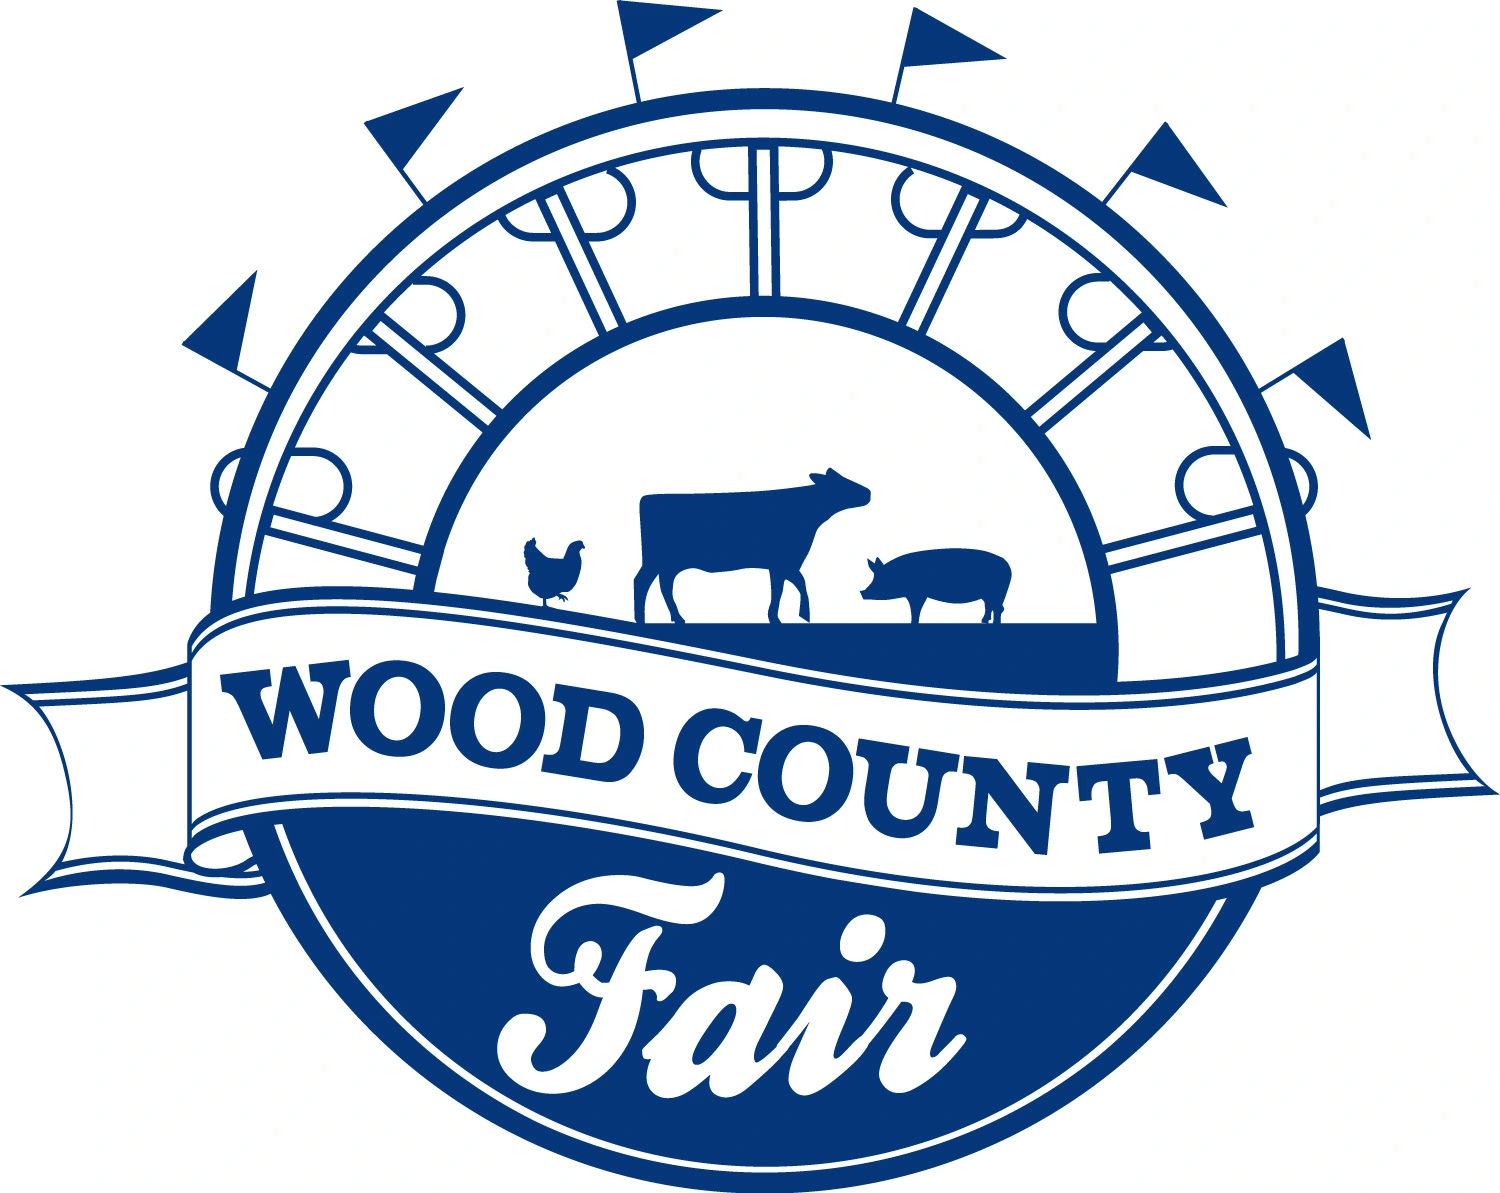 Wood County Fair